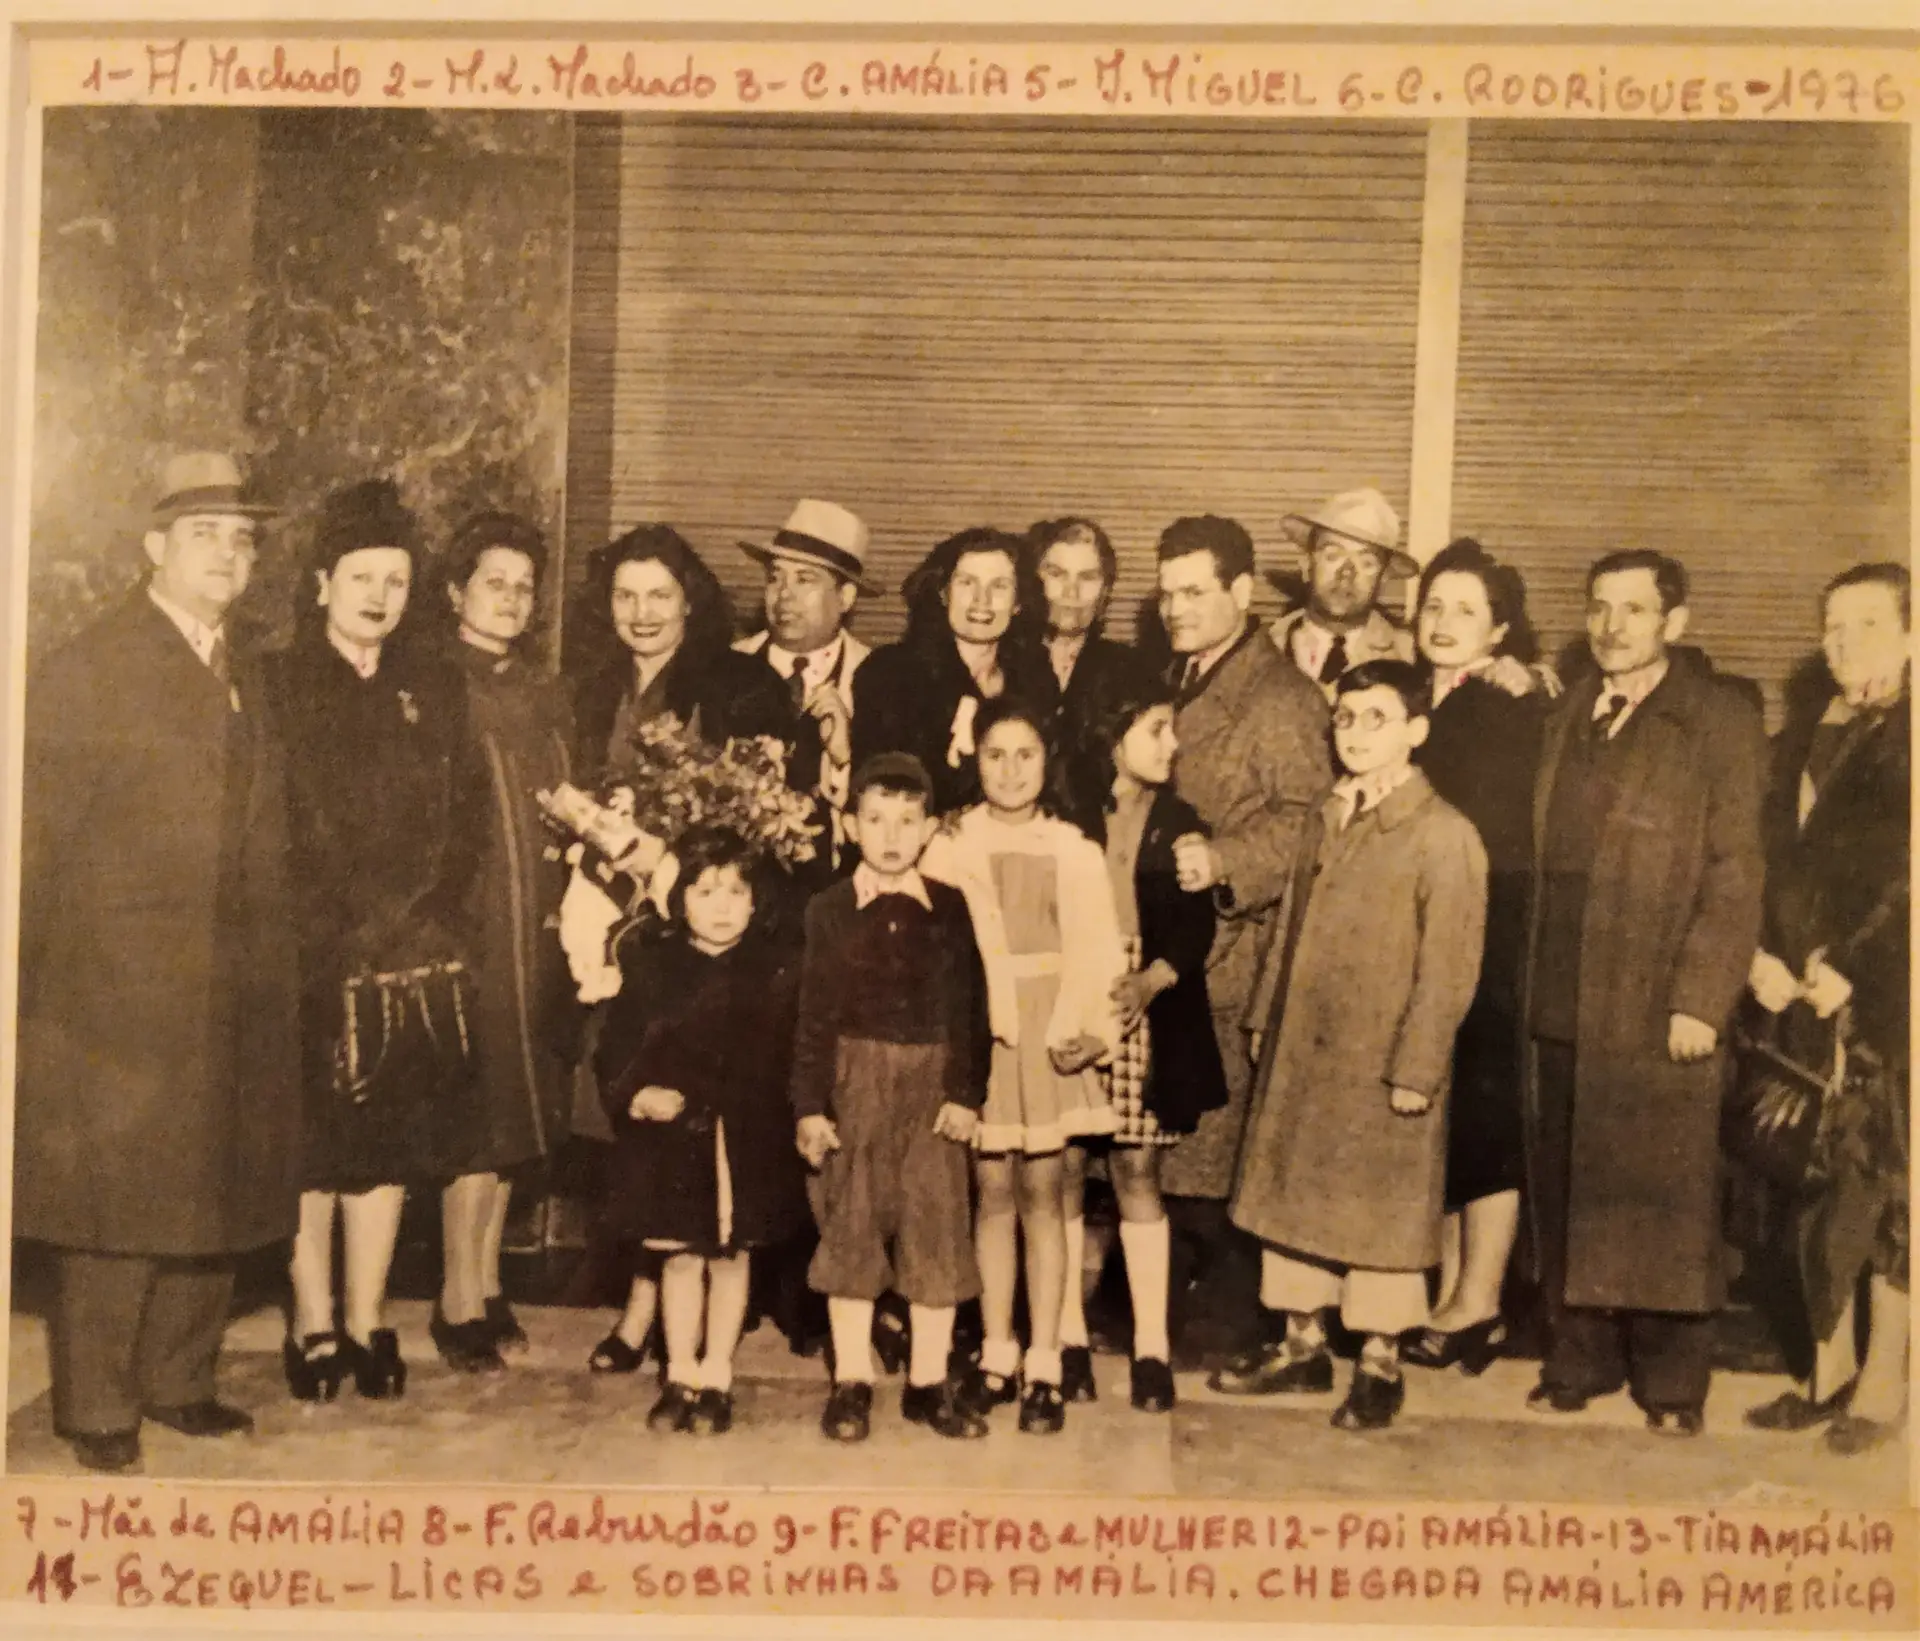 Foto antiga com elementos da família Machado, Amália Rodrigues e da família Rebordão